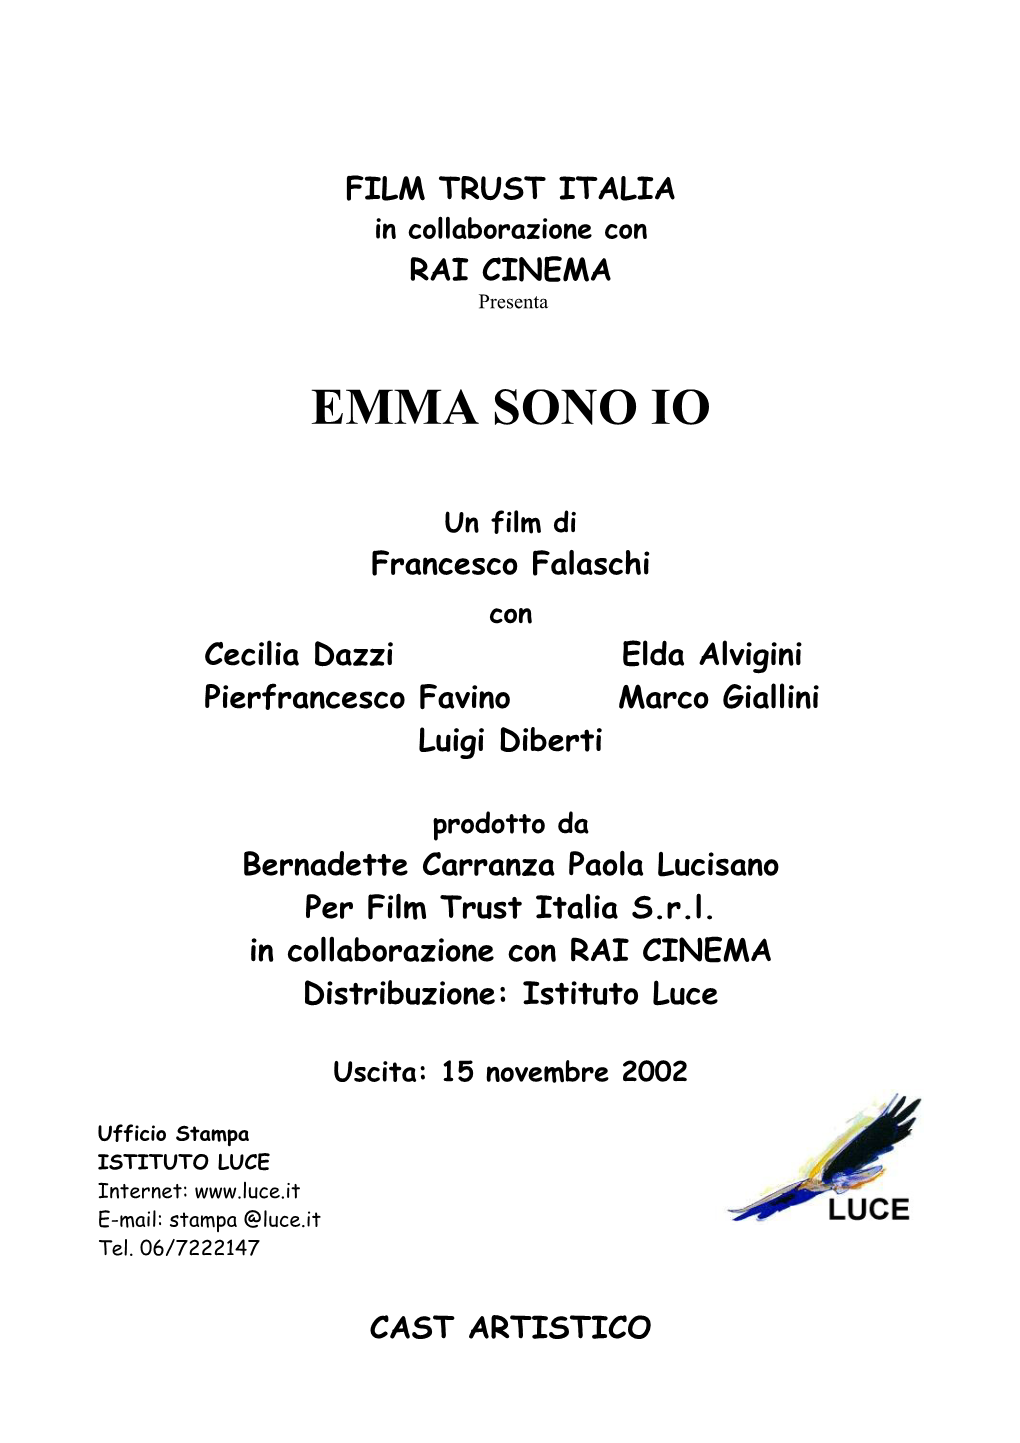 FILM TRUST ITALIA in Collaborazione Con RAI CINEMA Presenta